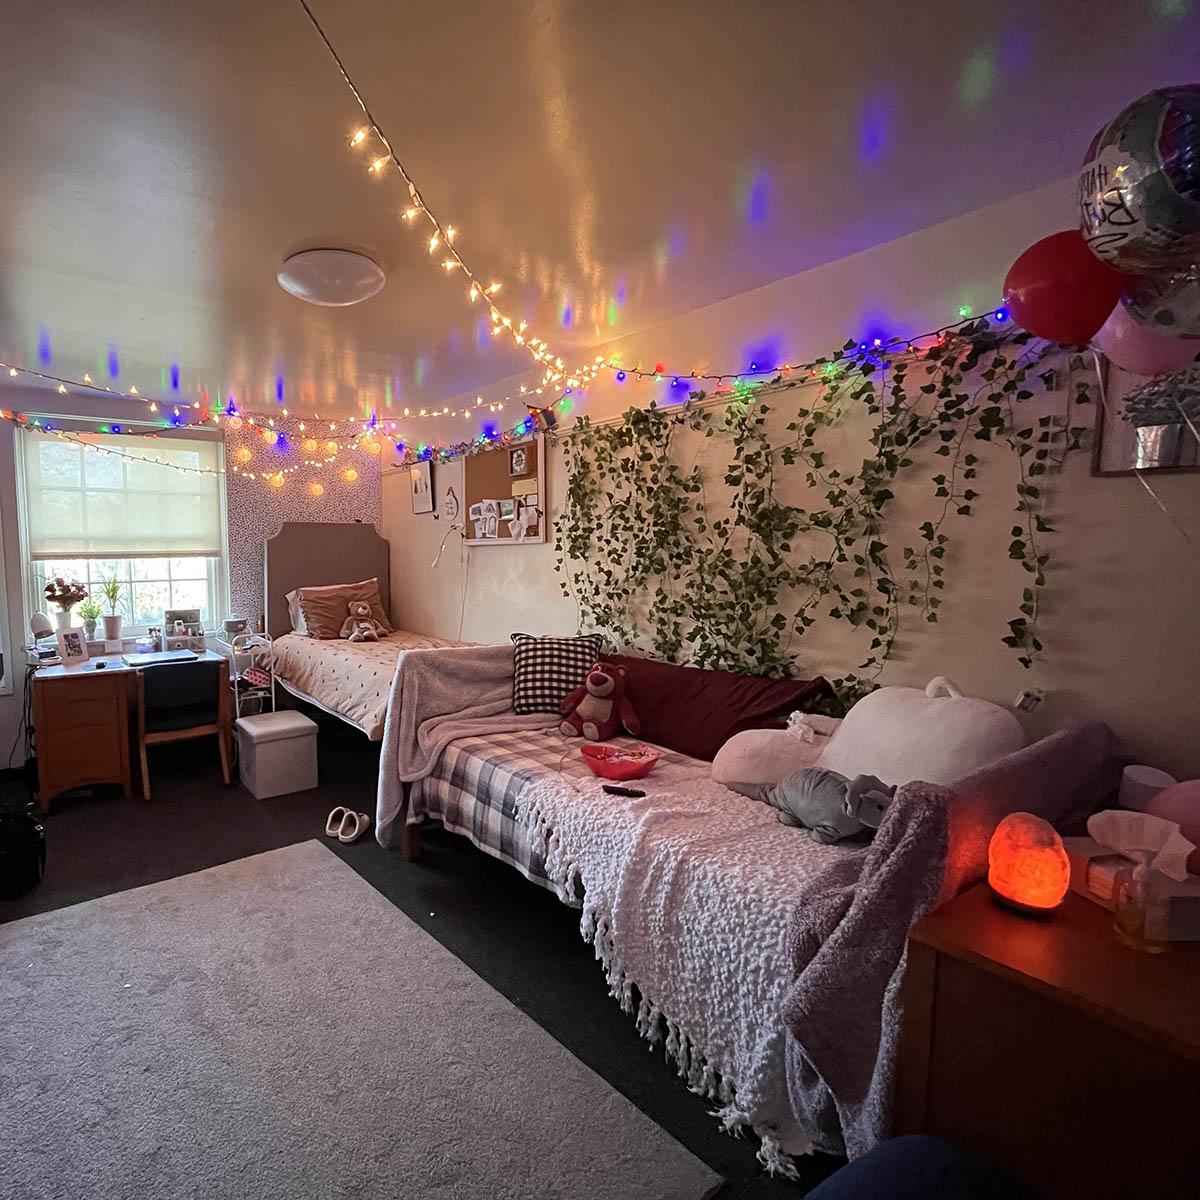 照片里的宿舍里有舒适的枕头、毯子和精灵灯